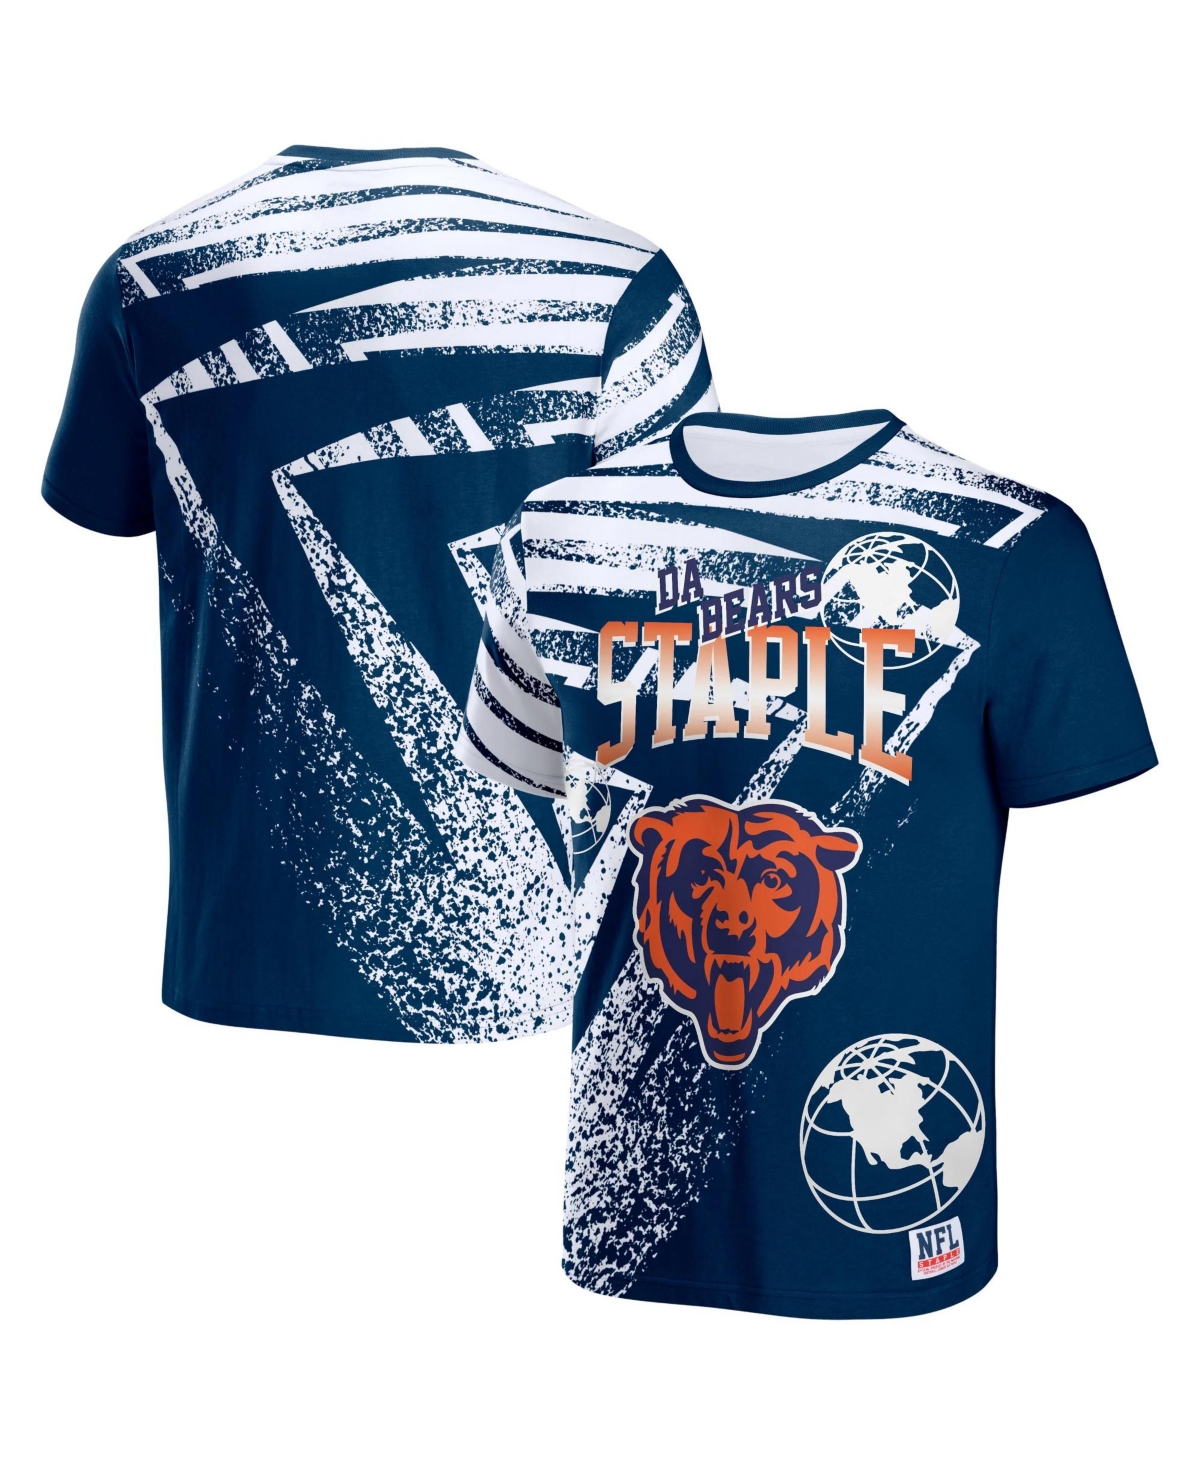 Men's Nfl X Staple Navy Chicago Bears Team Slogan All Over Print Short Sleeve T-shirt - Navy